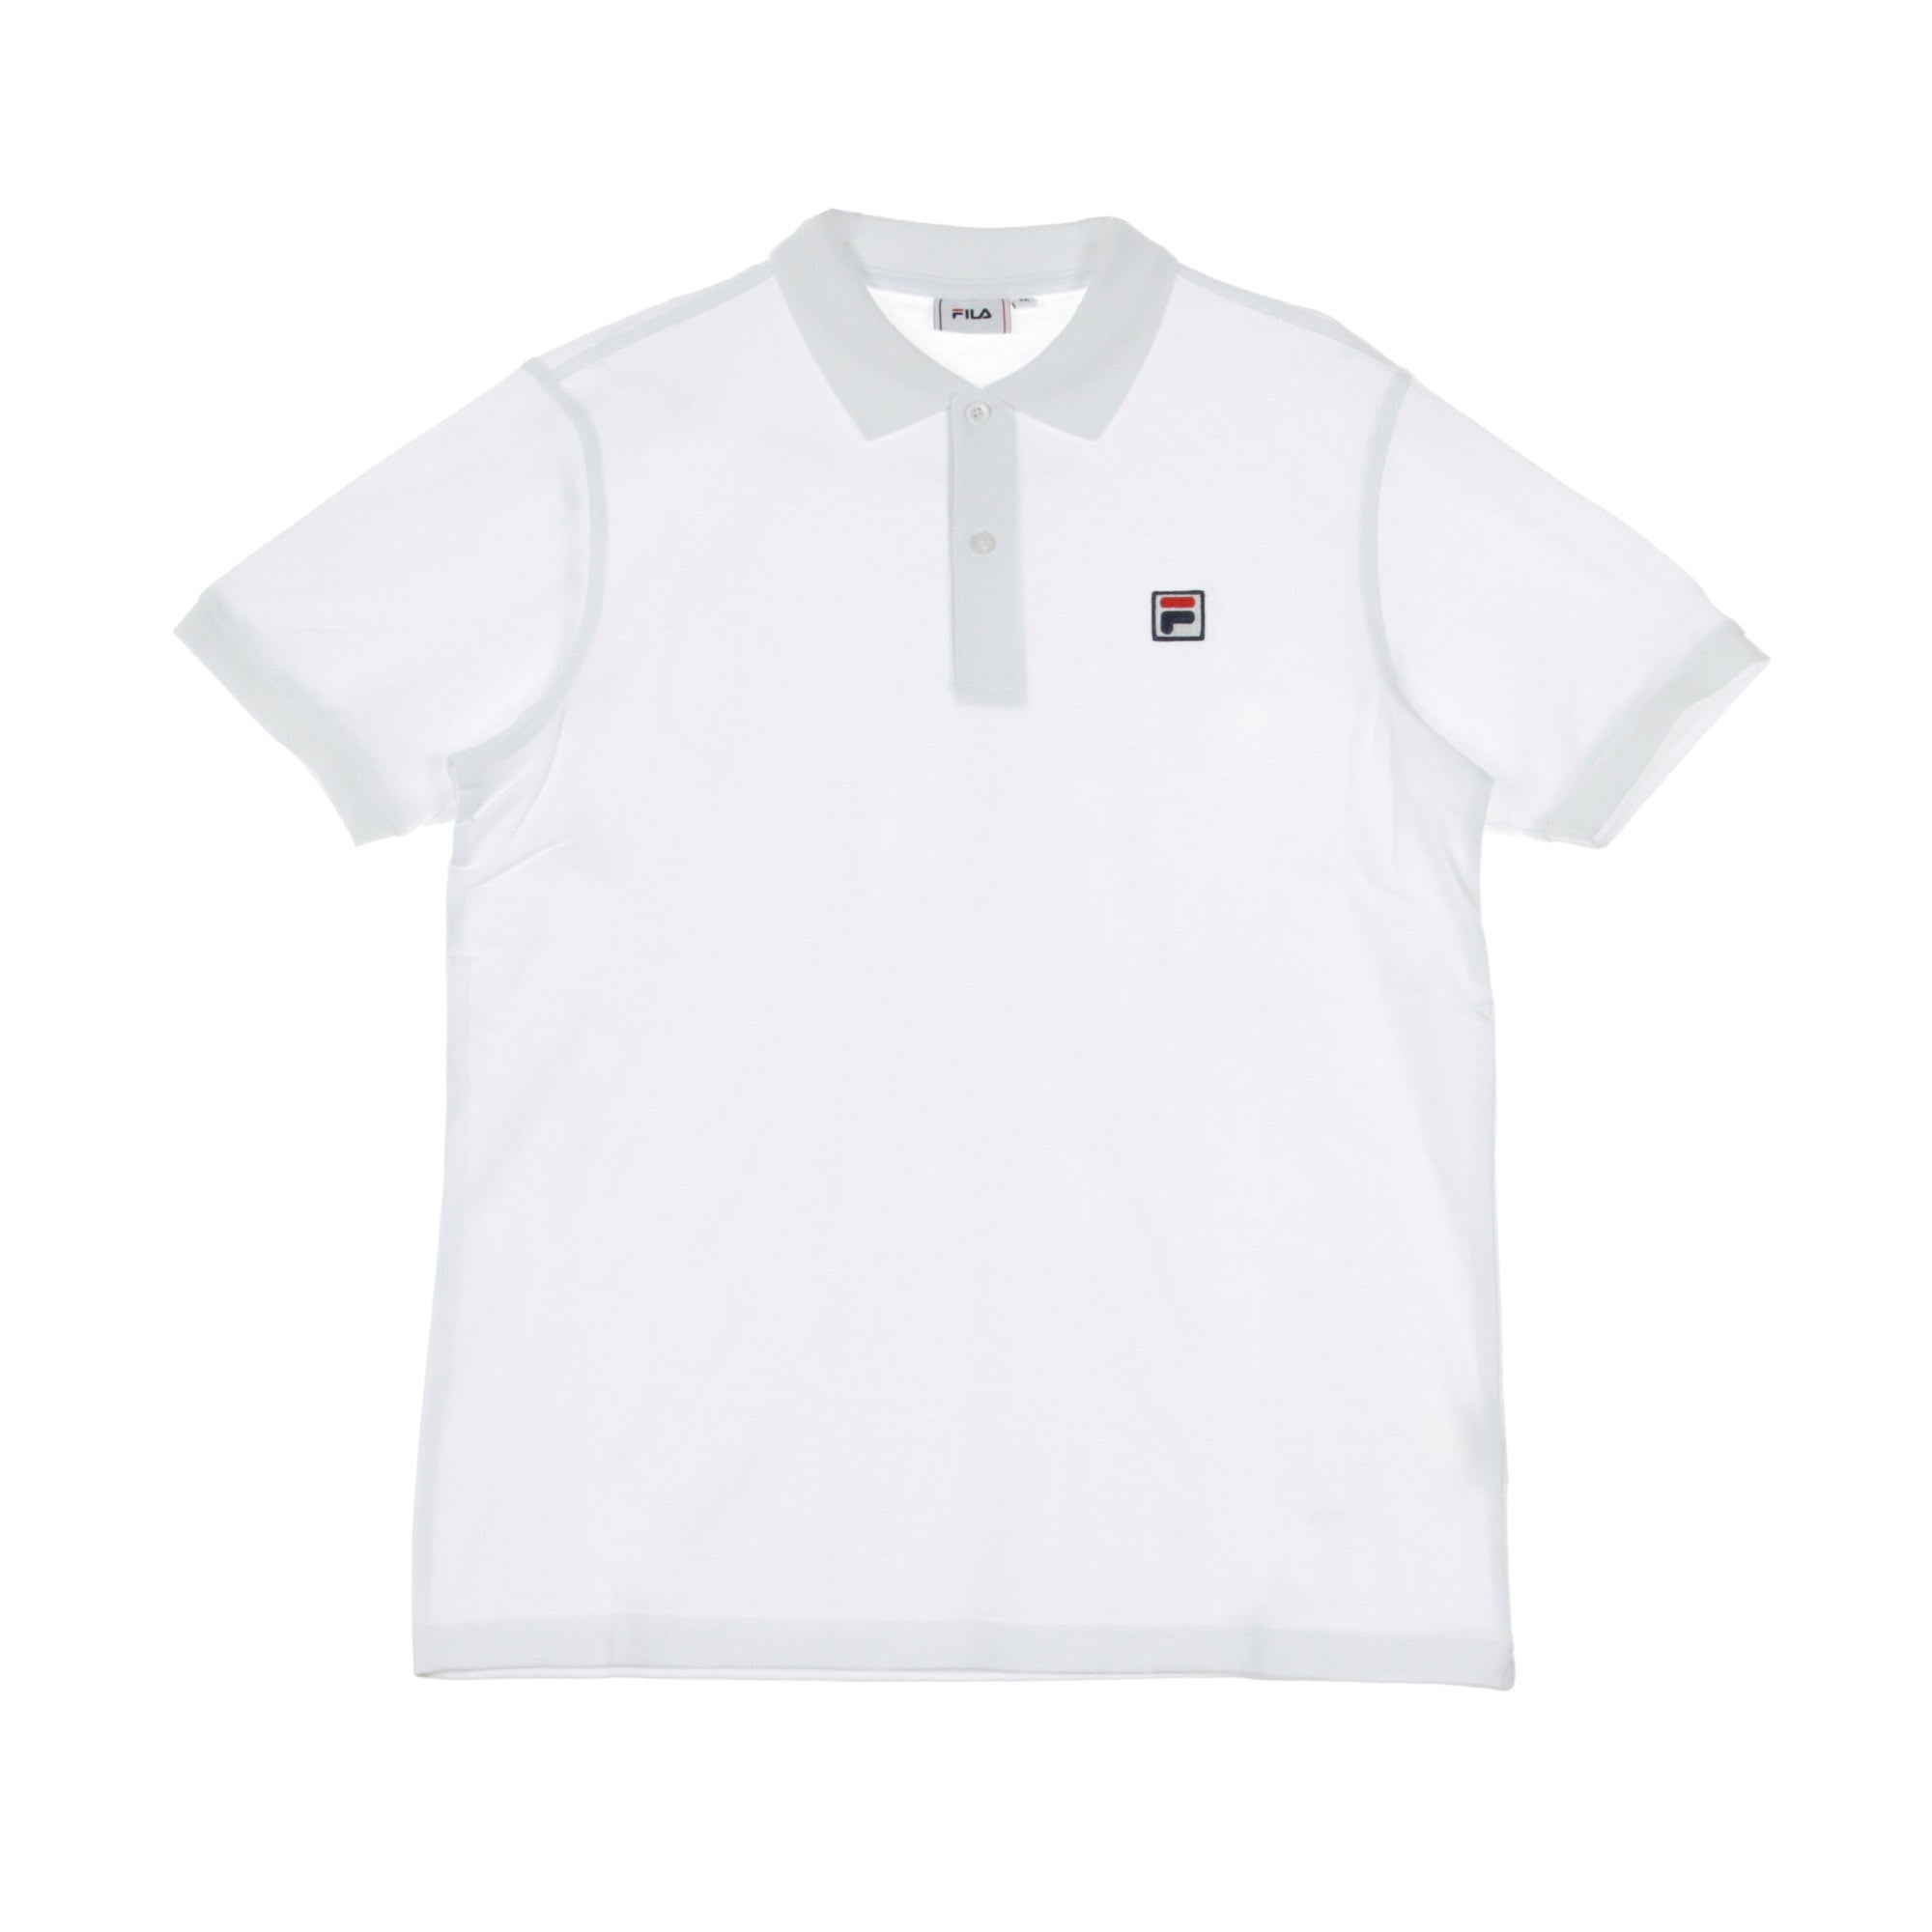 Edgar Bright White Men's Short Sleeve Polo Shirt